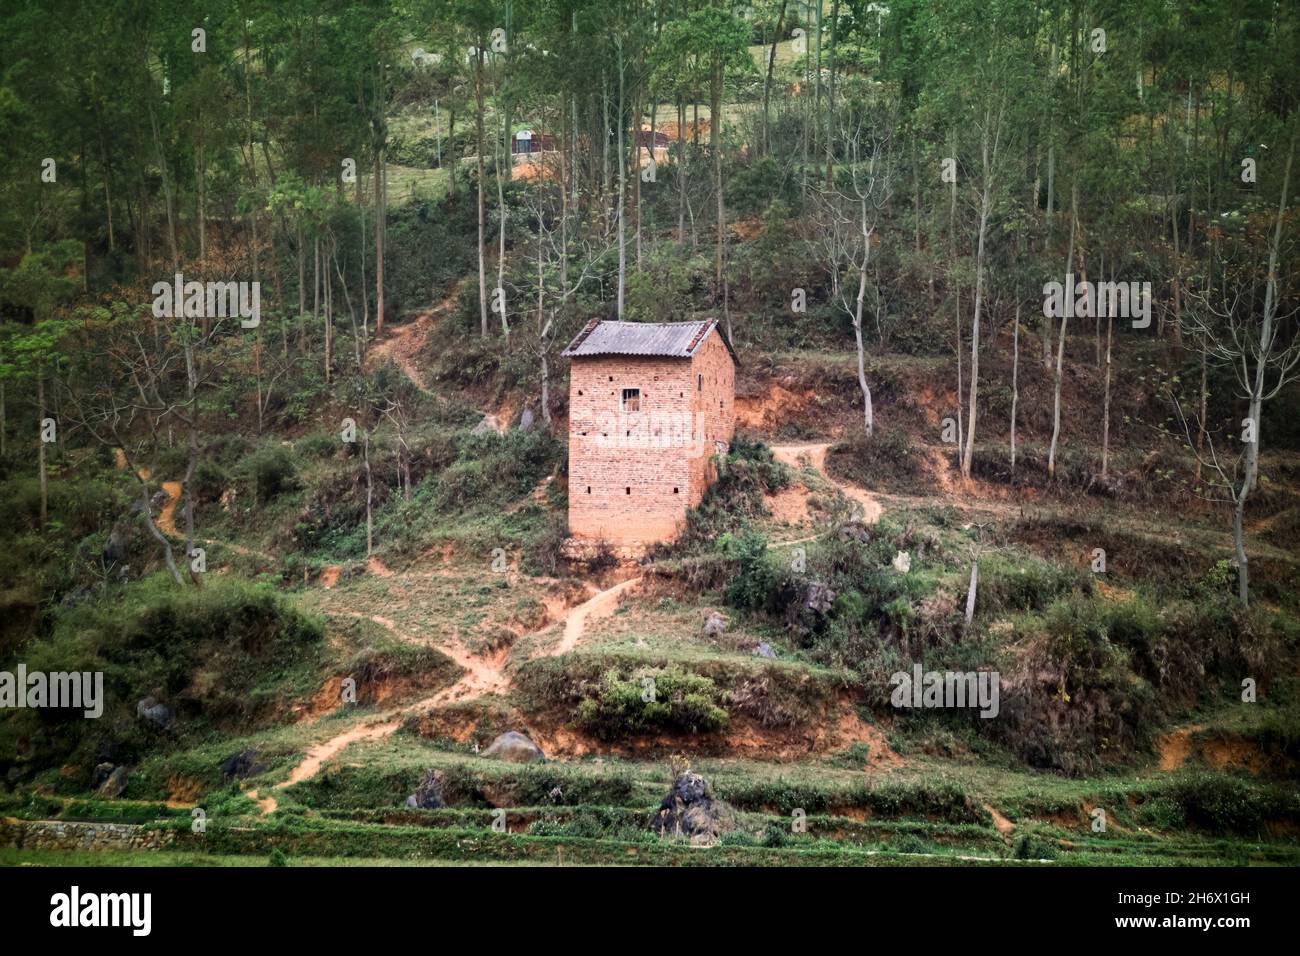 La maison traditionnelle de terre de la tribu Hmong, dans le Cu pulmonaire, au Vietnam Banque D'Images